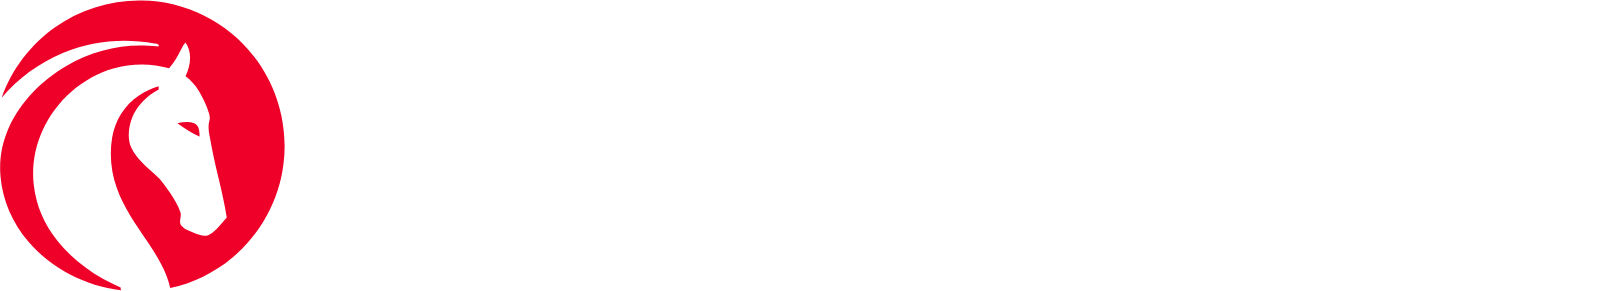 Jackson Financial logo large for dark backgrounds (transparent PNG)